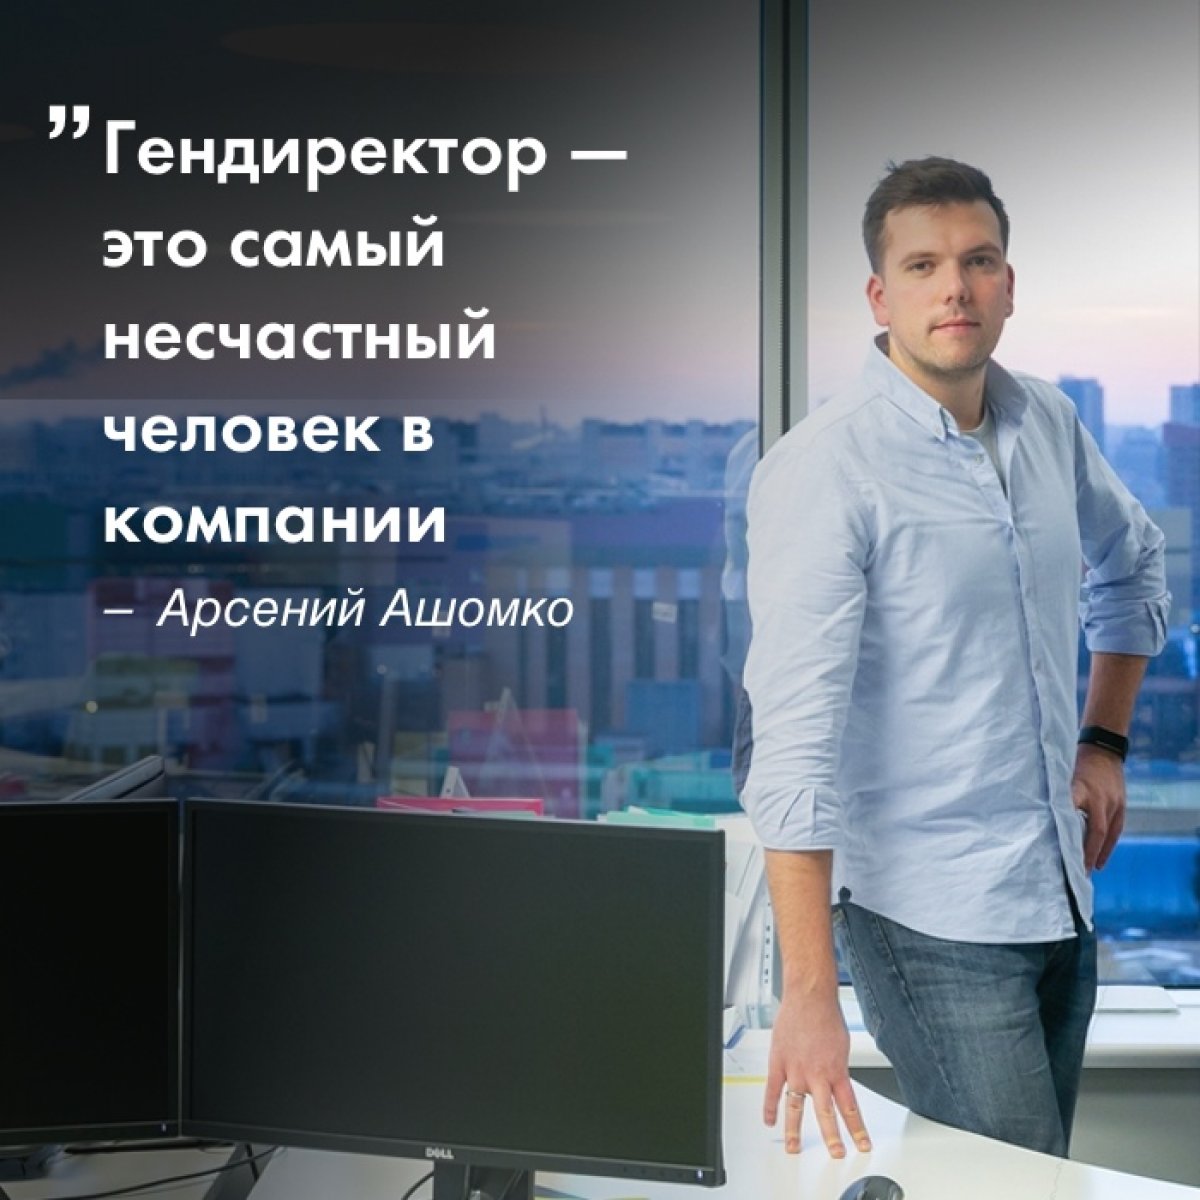 Арсений Ашомко закончил факультет права в Вышке, а в 2018 году стал директором по развитию медиапродуктов в компании «ВКонтакте». Он рассказал, как выглядит рынок рекламы изнутри и в чем польза юридического образования для любых сфер